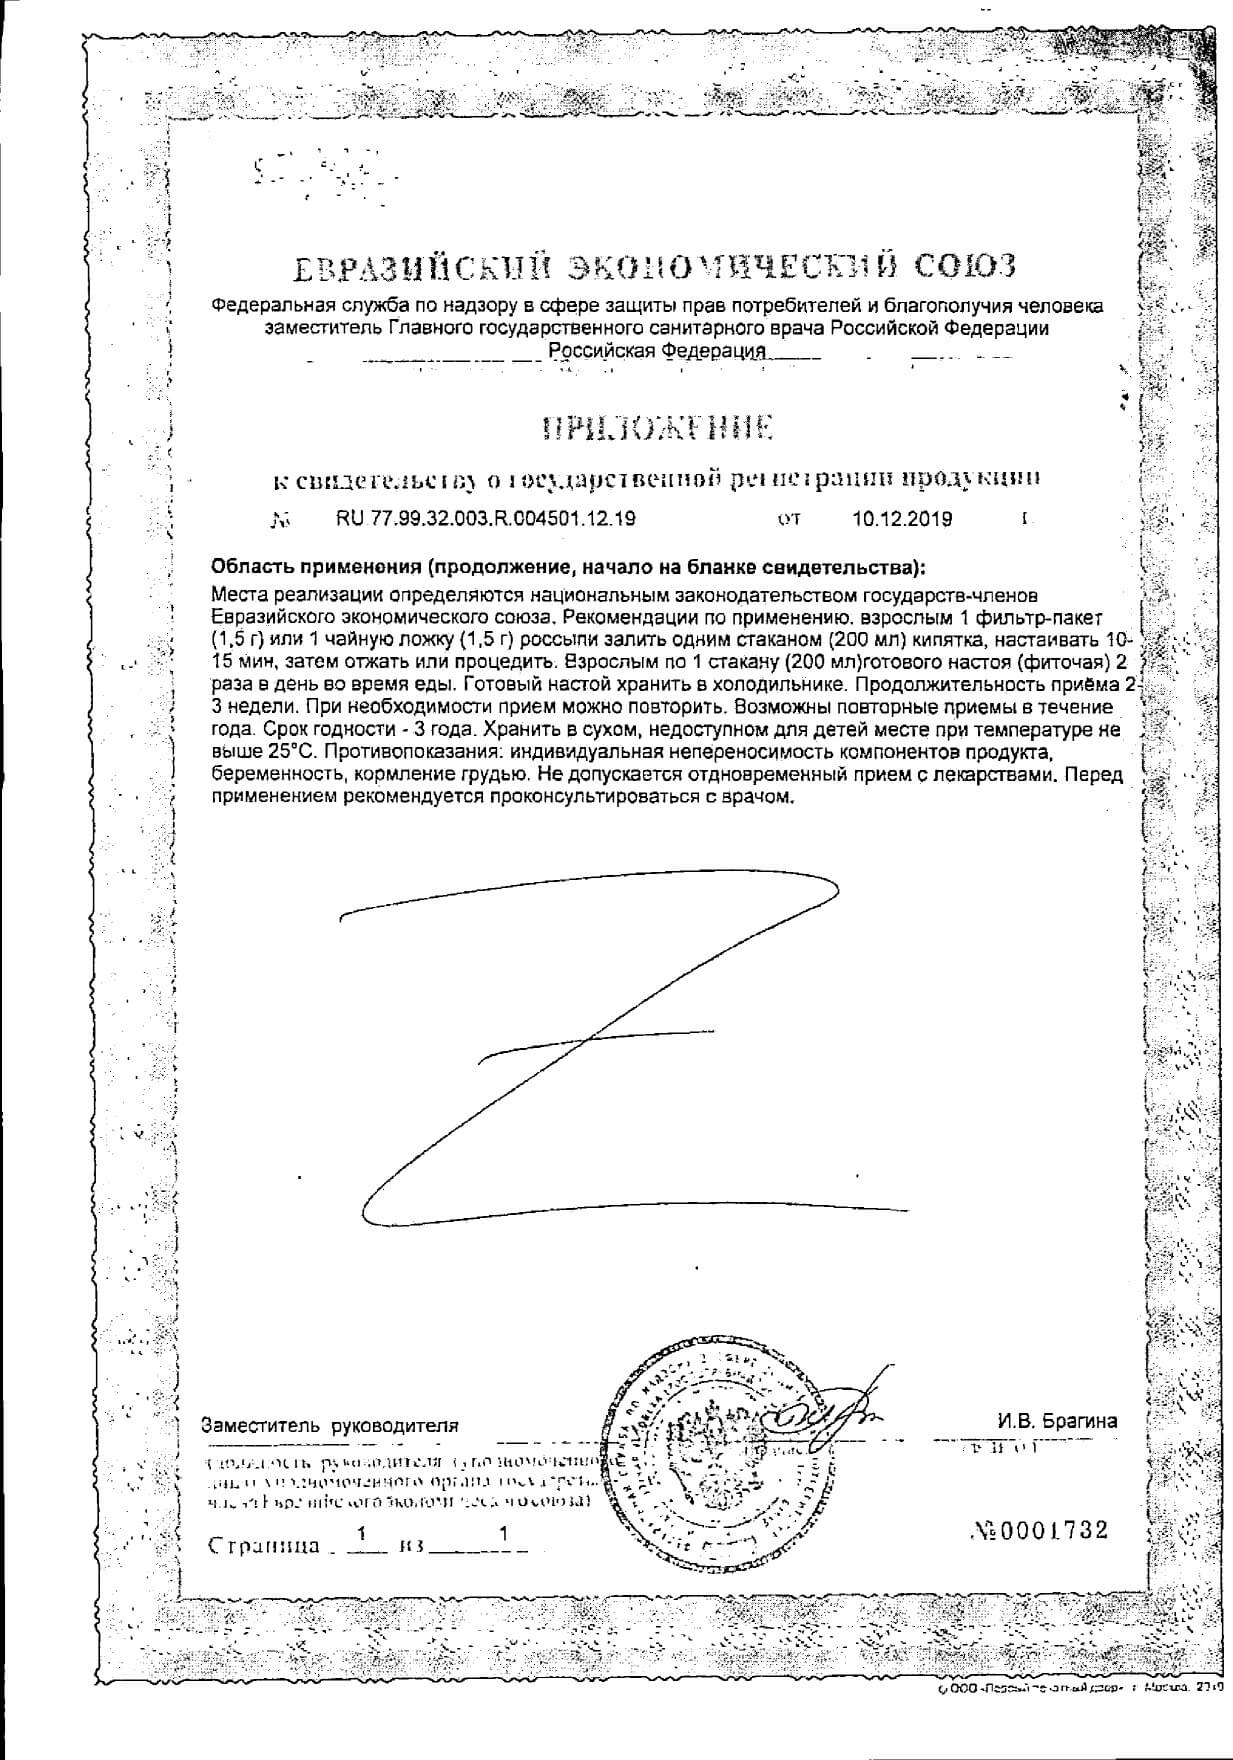 Фиточай Фитал 3 валерьяна-микс для нервной системы ф/п Соик 1,5г 20шт: сертификат